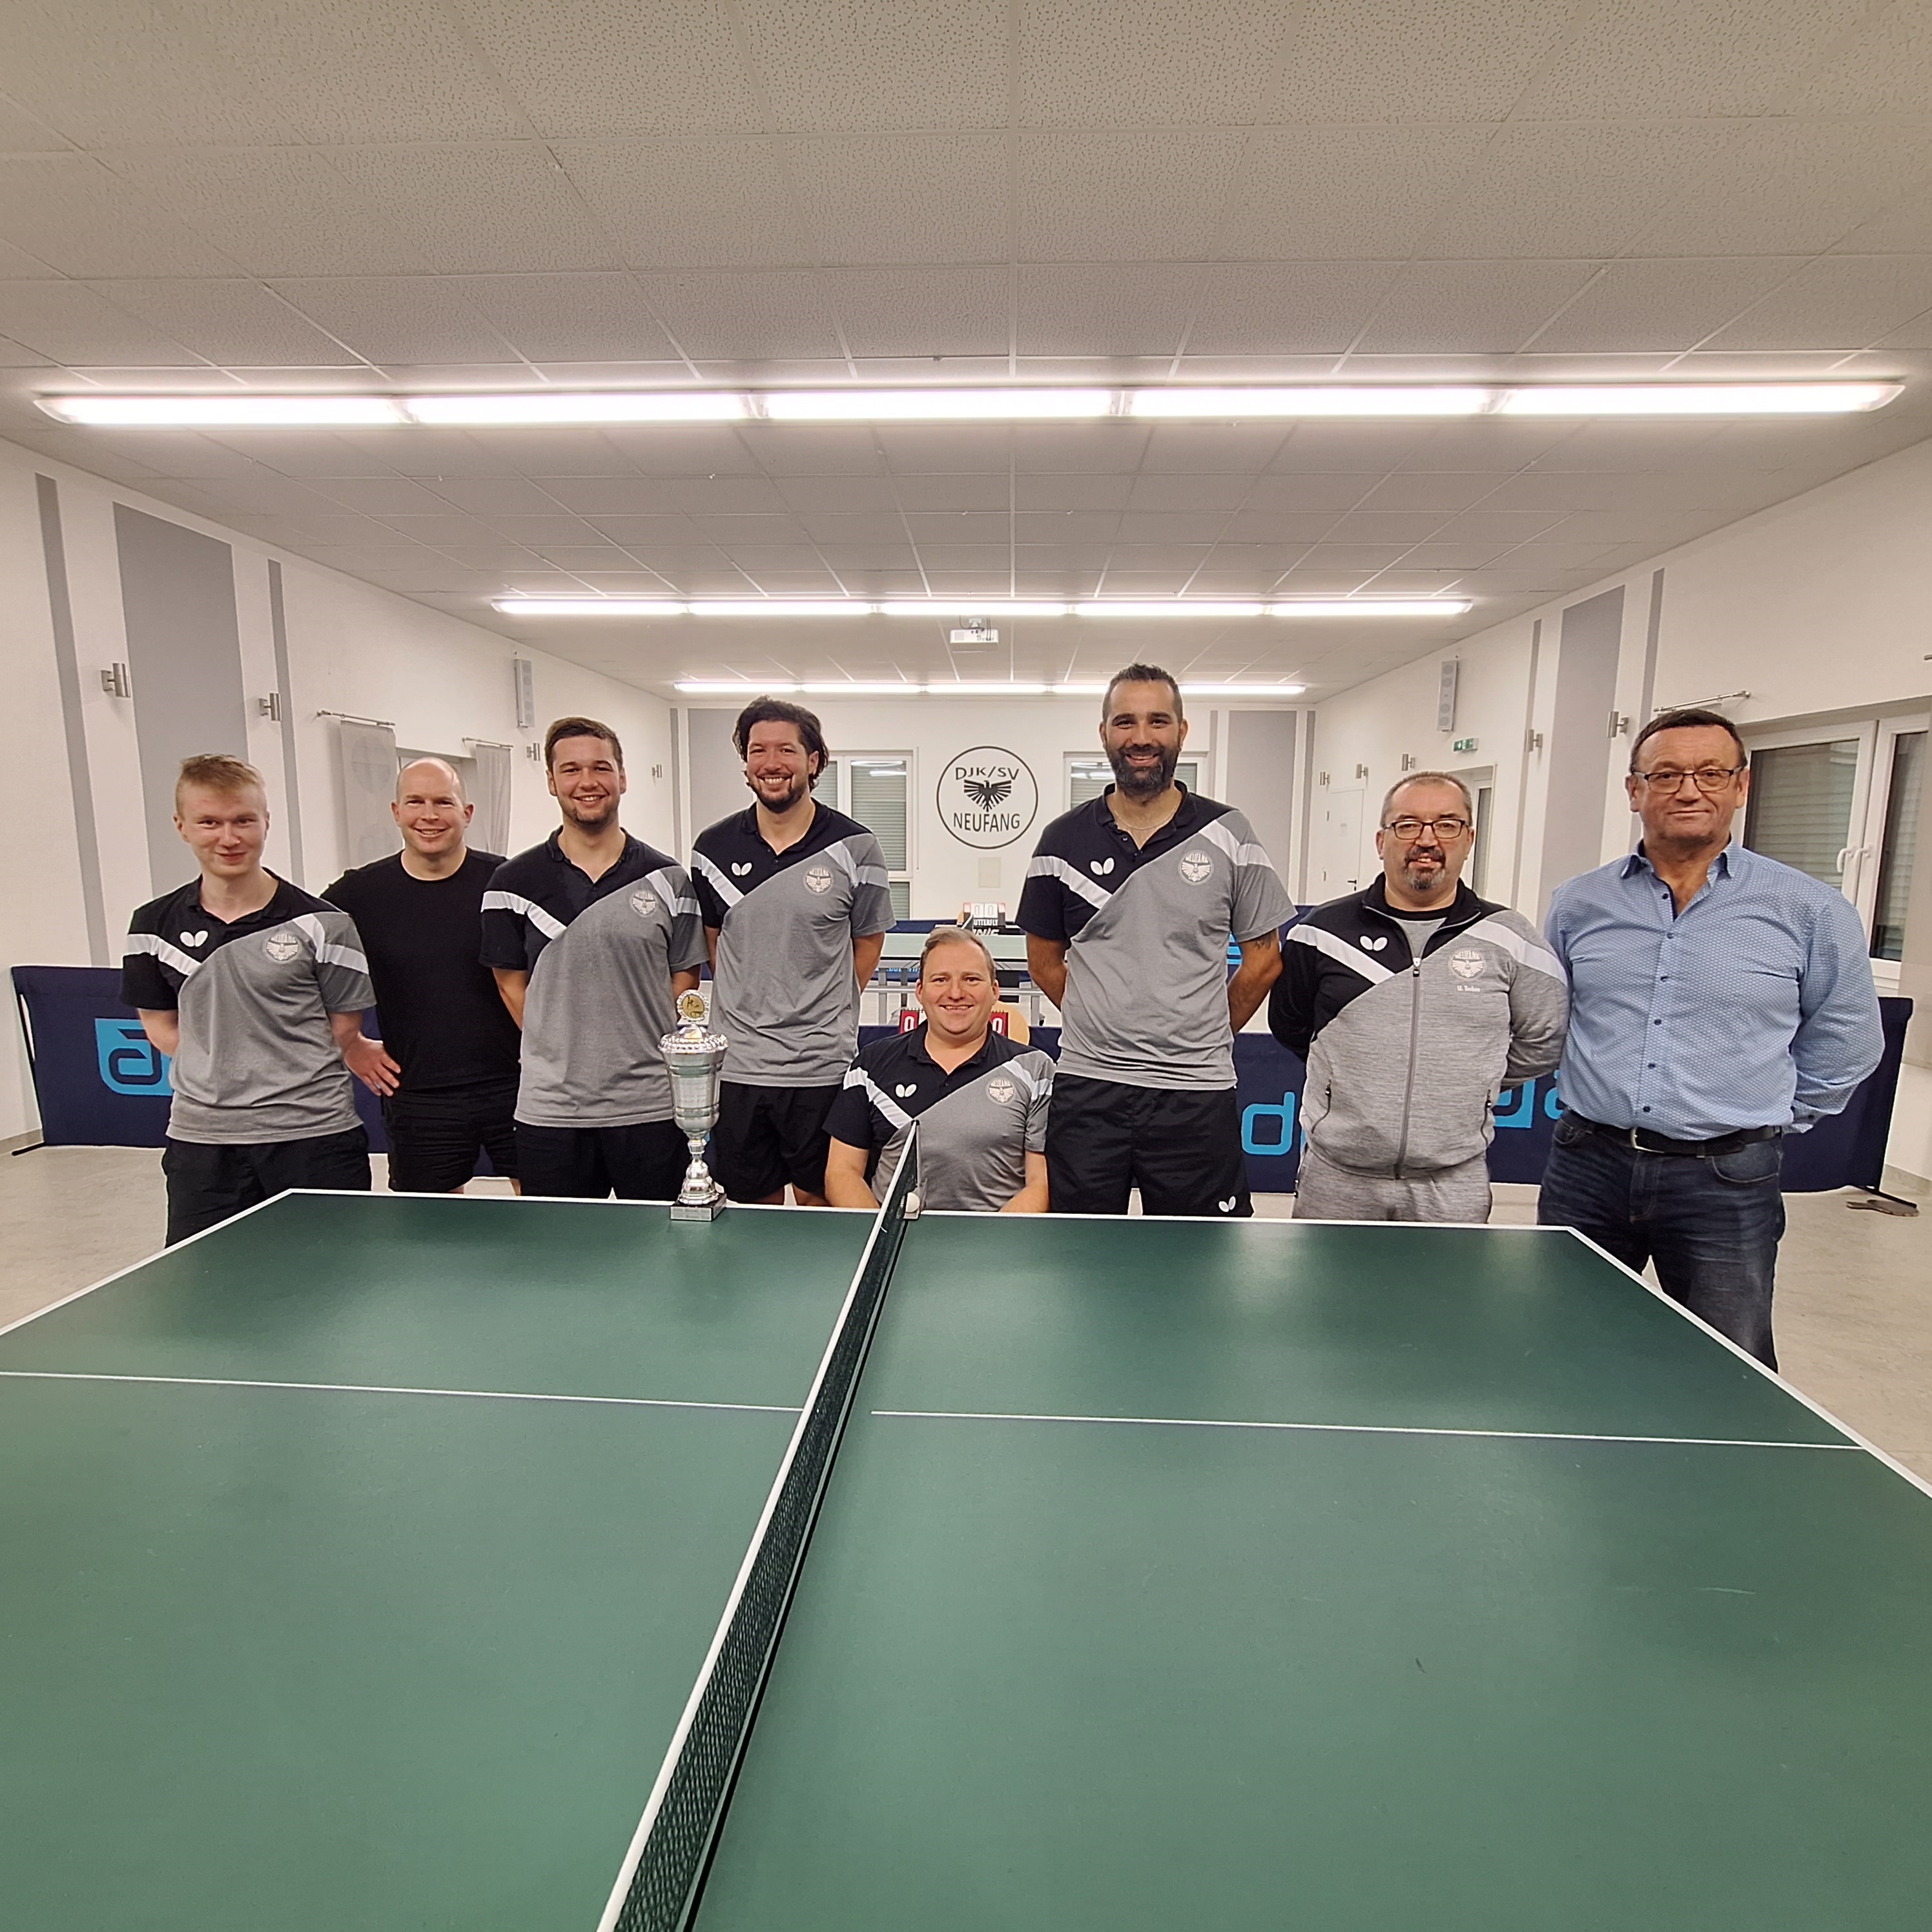 Tischtennis: Vereinsmeisterschaften beim DJK/SV Neufang